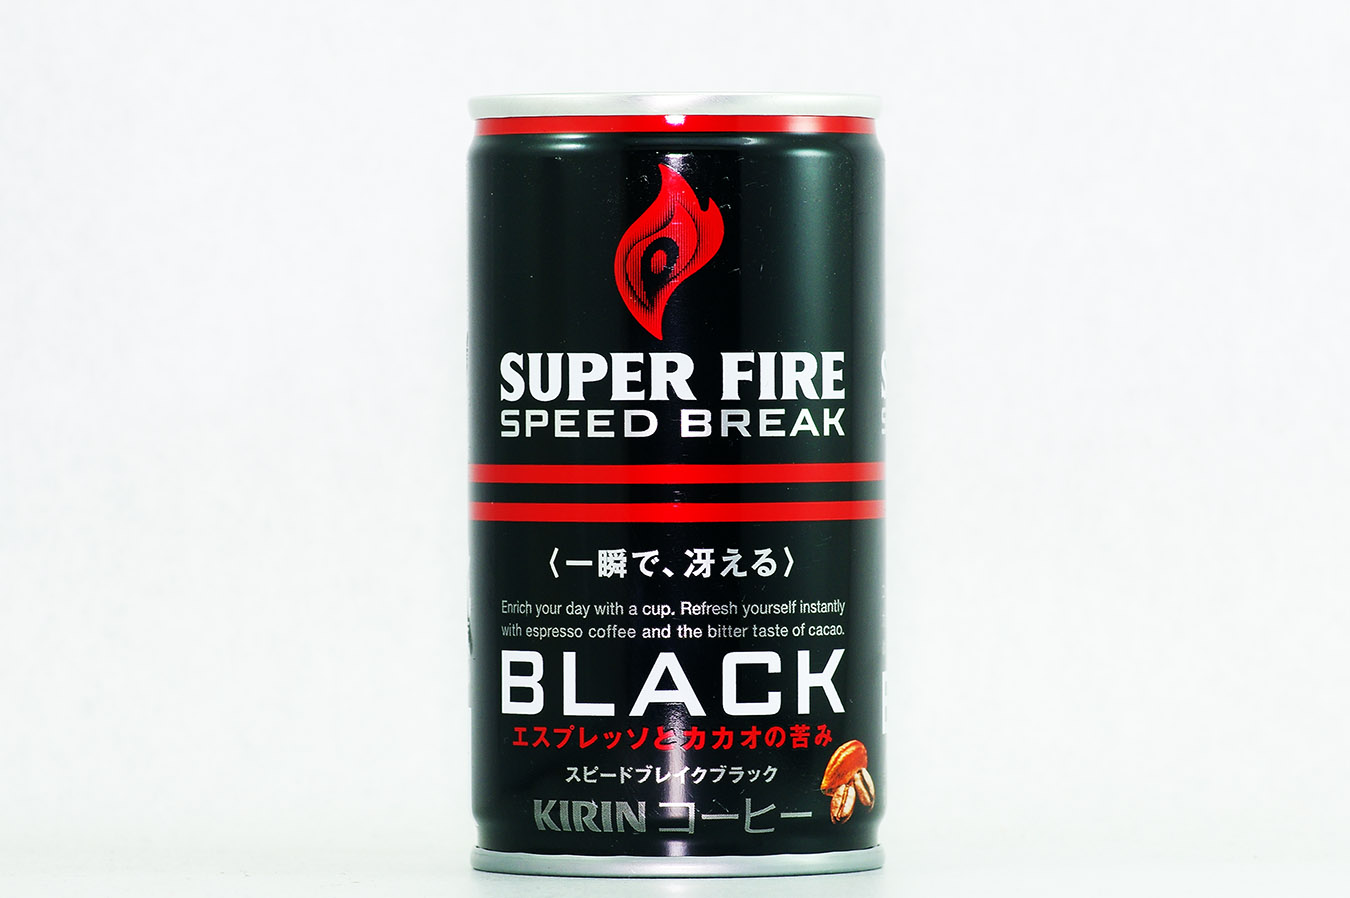 SUPERFIRE スピードブレイクブラック 165g缶 2016年3月